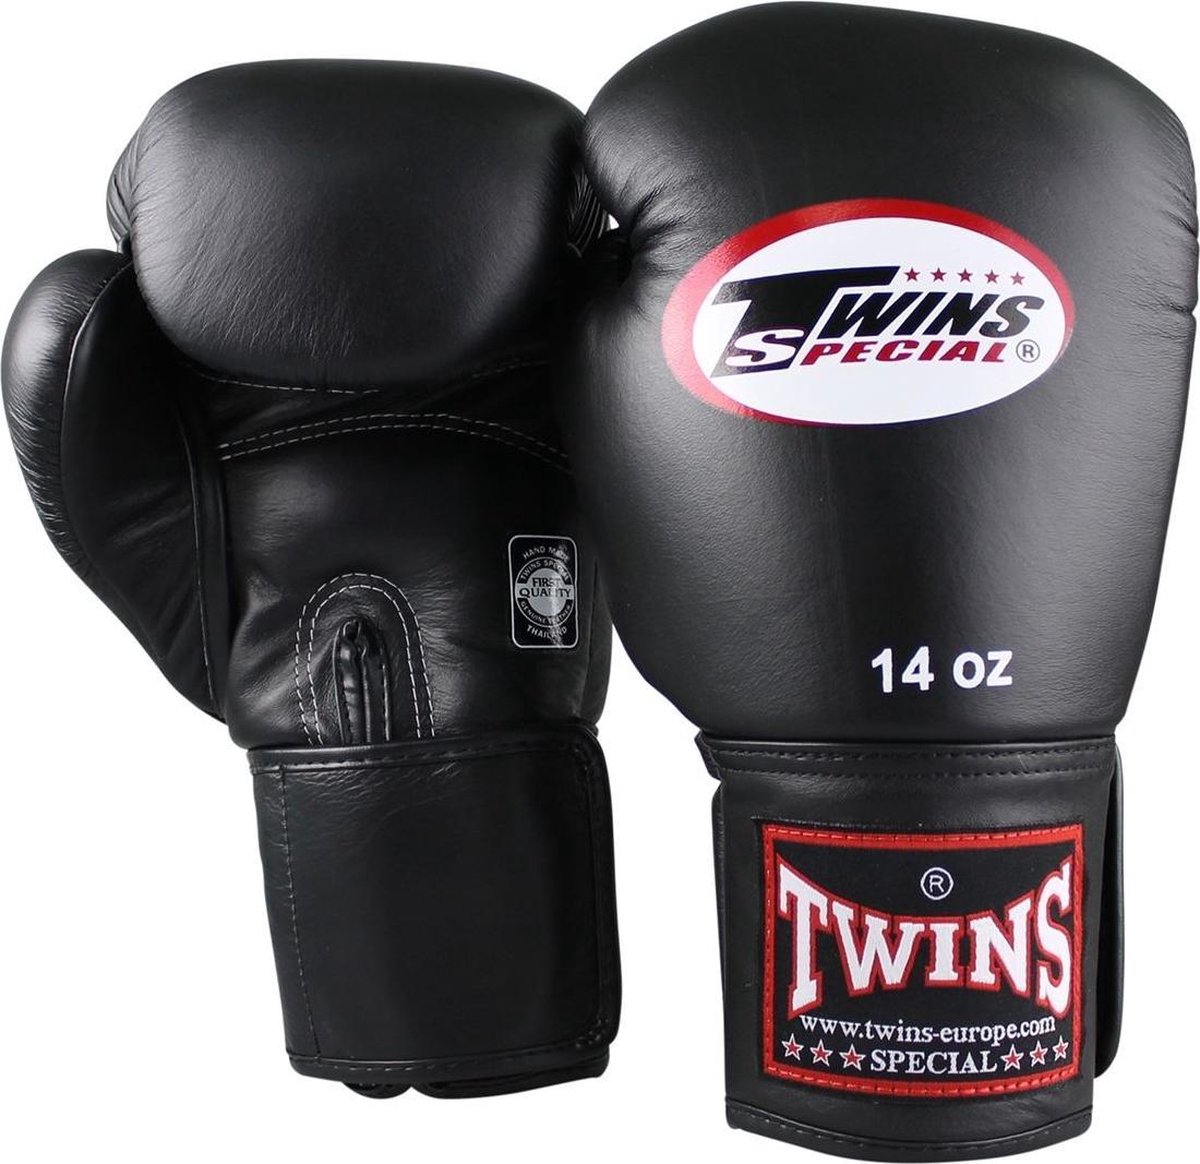 Gant de boxe Twins (kick) court Velcro Noir 16 oz | bol.com